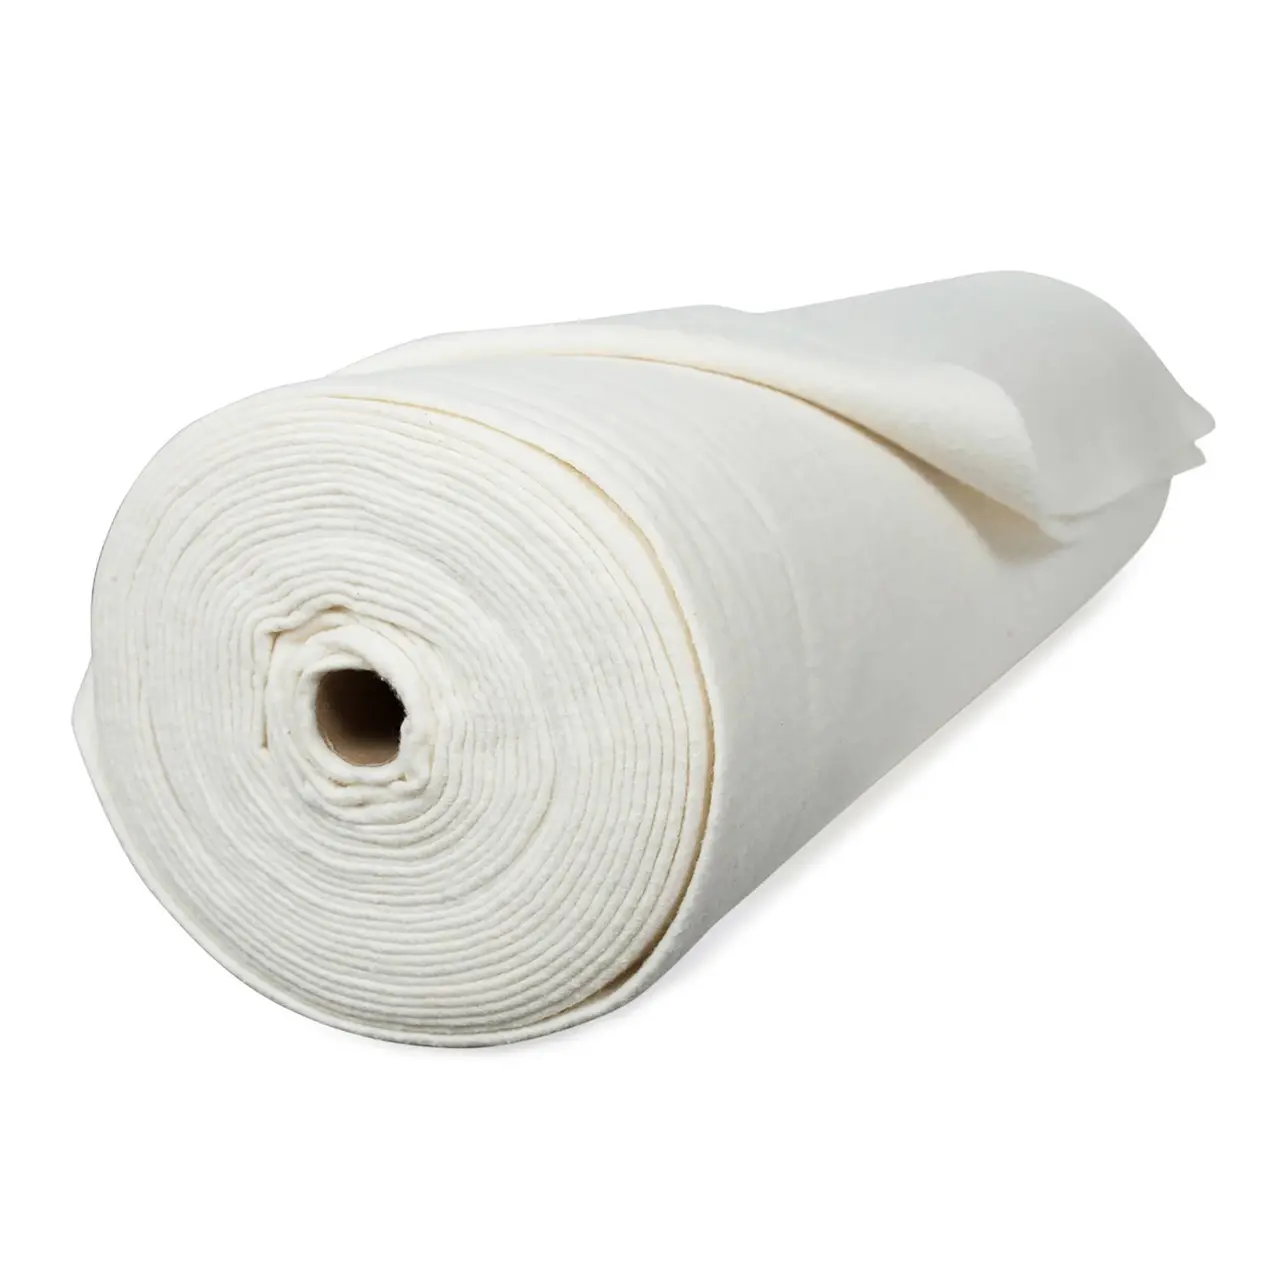 68*60 24*20 52% Vải Polyester 48% Cotton Trắng Đã Tẩy Trắng Vải Oeko Tex Được Chứng Nhận Cho Hàng Dệt Gia Dụng & Thể Chế